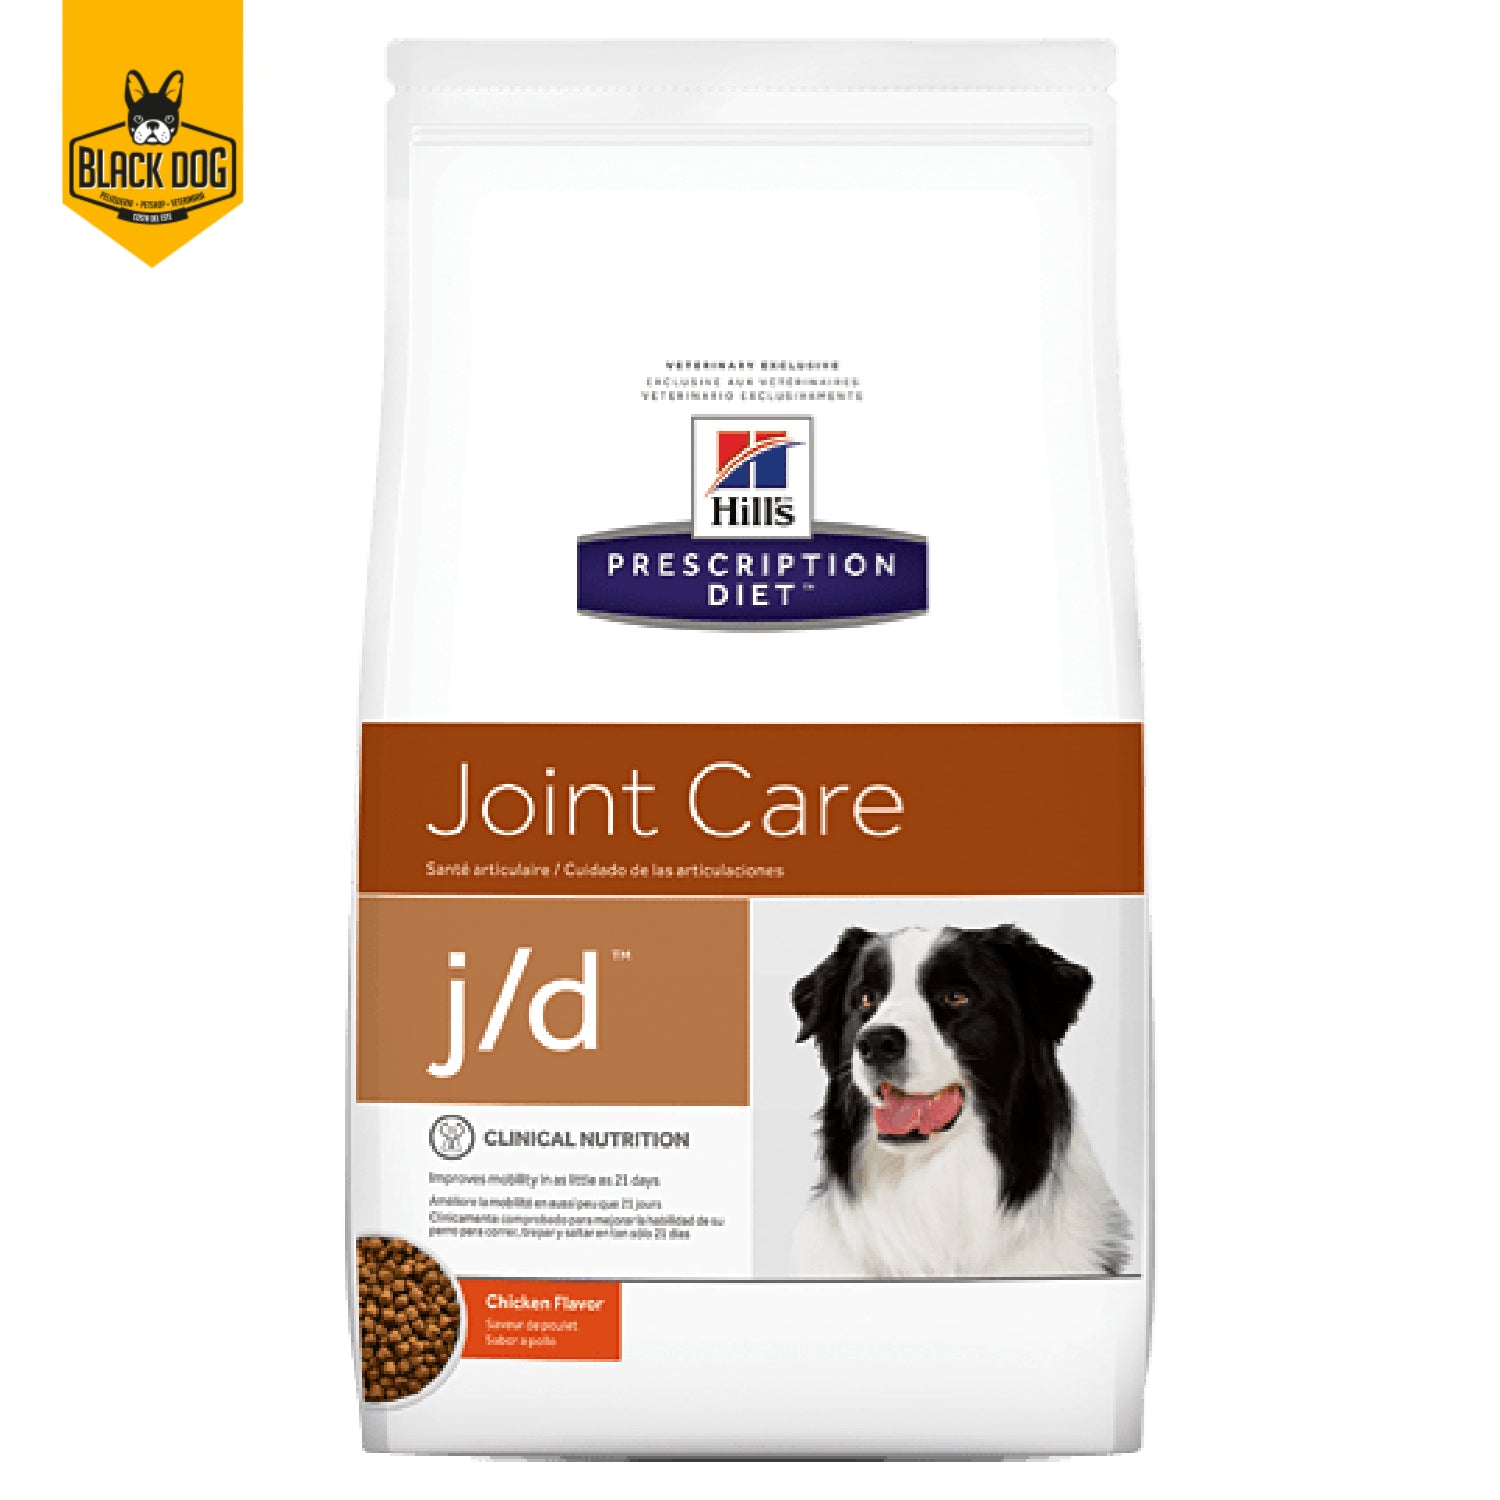 HILL´S | Prescription Diet | J/D Canine Joint Care | 8.5Lb - BlackDogPanama